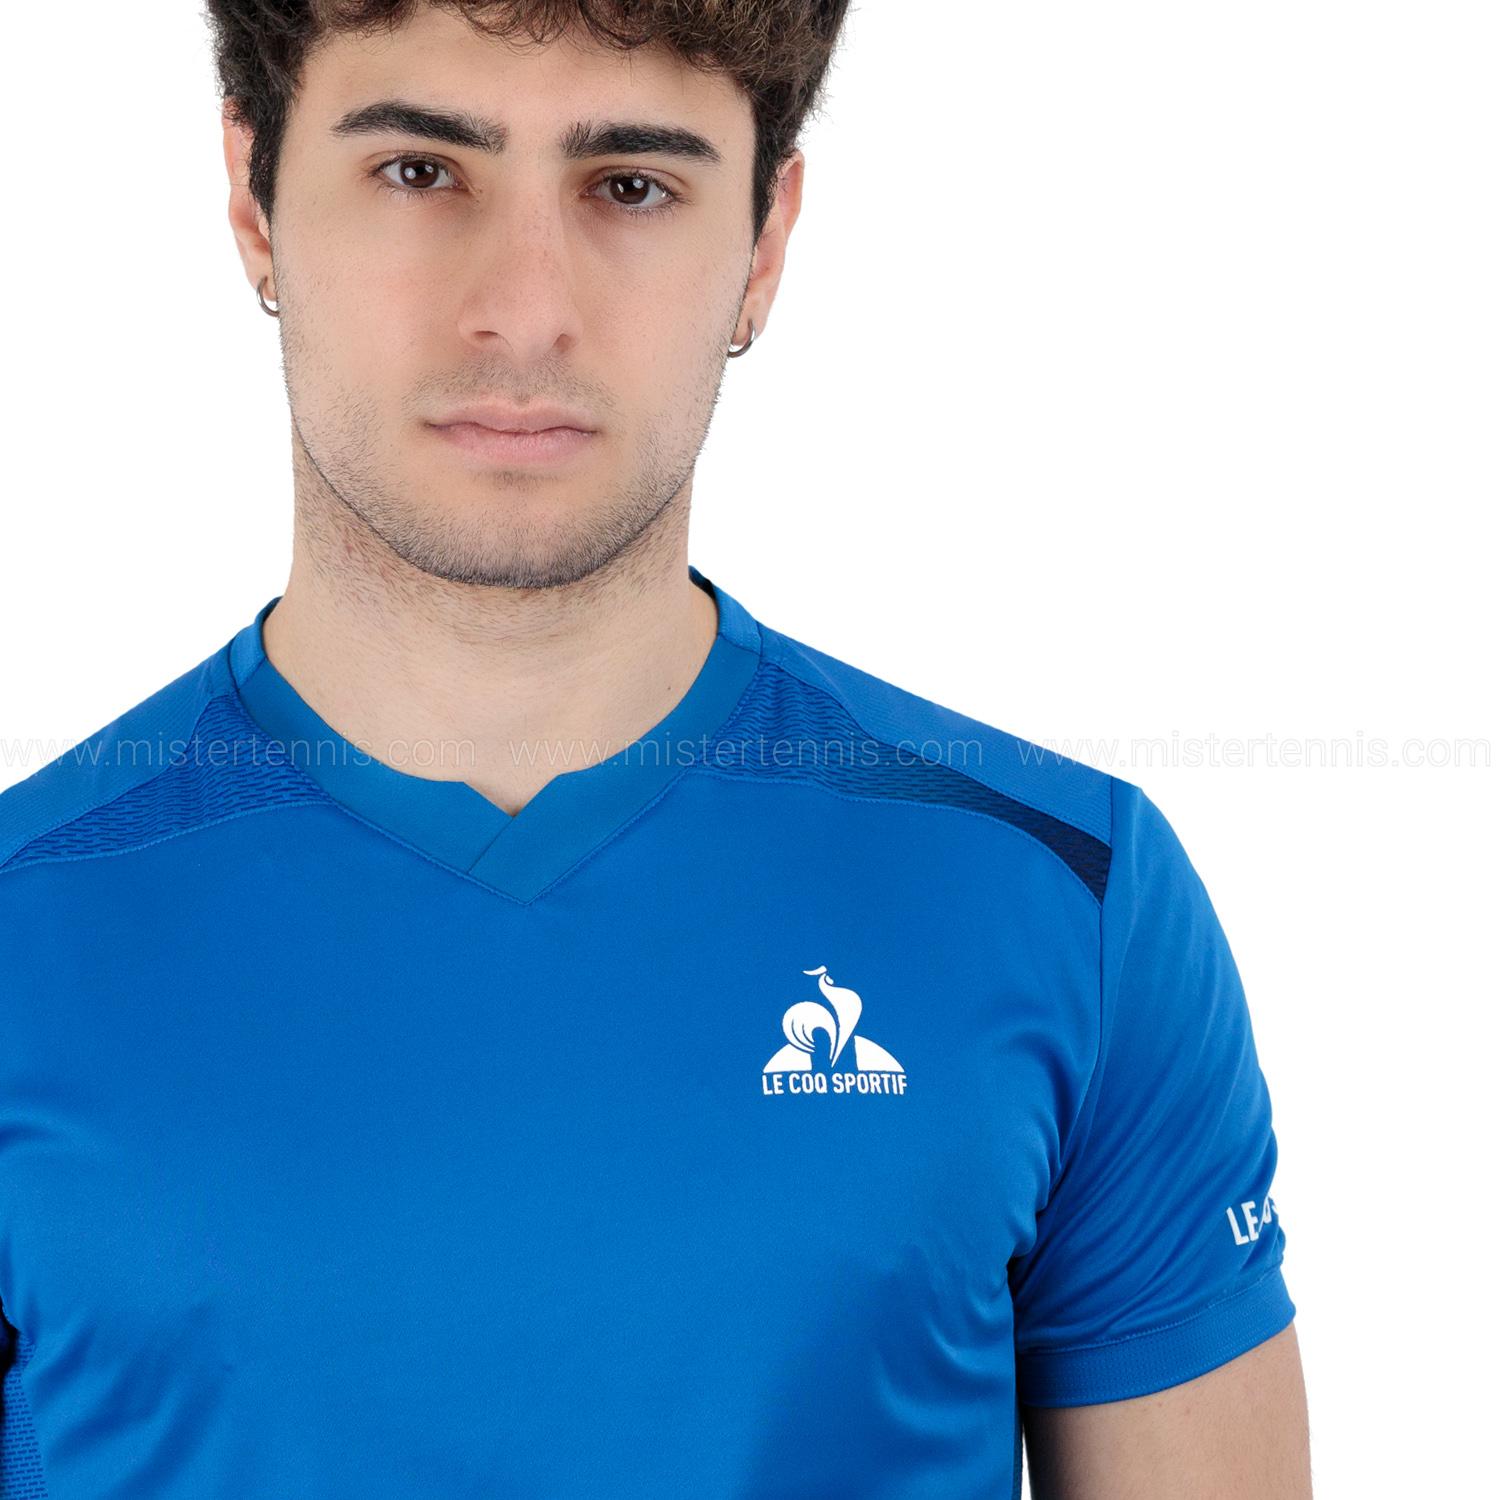 Le Coq Sportif Pro Maglietta - Lapis Blue